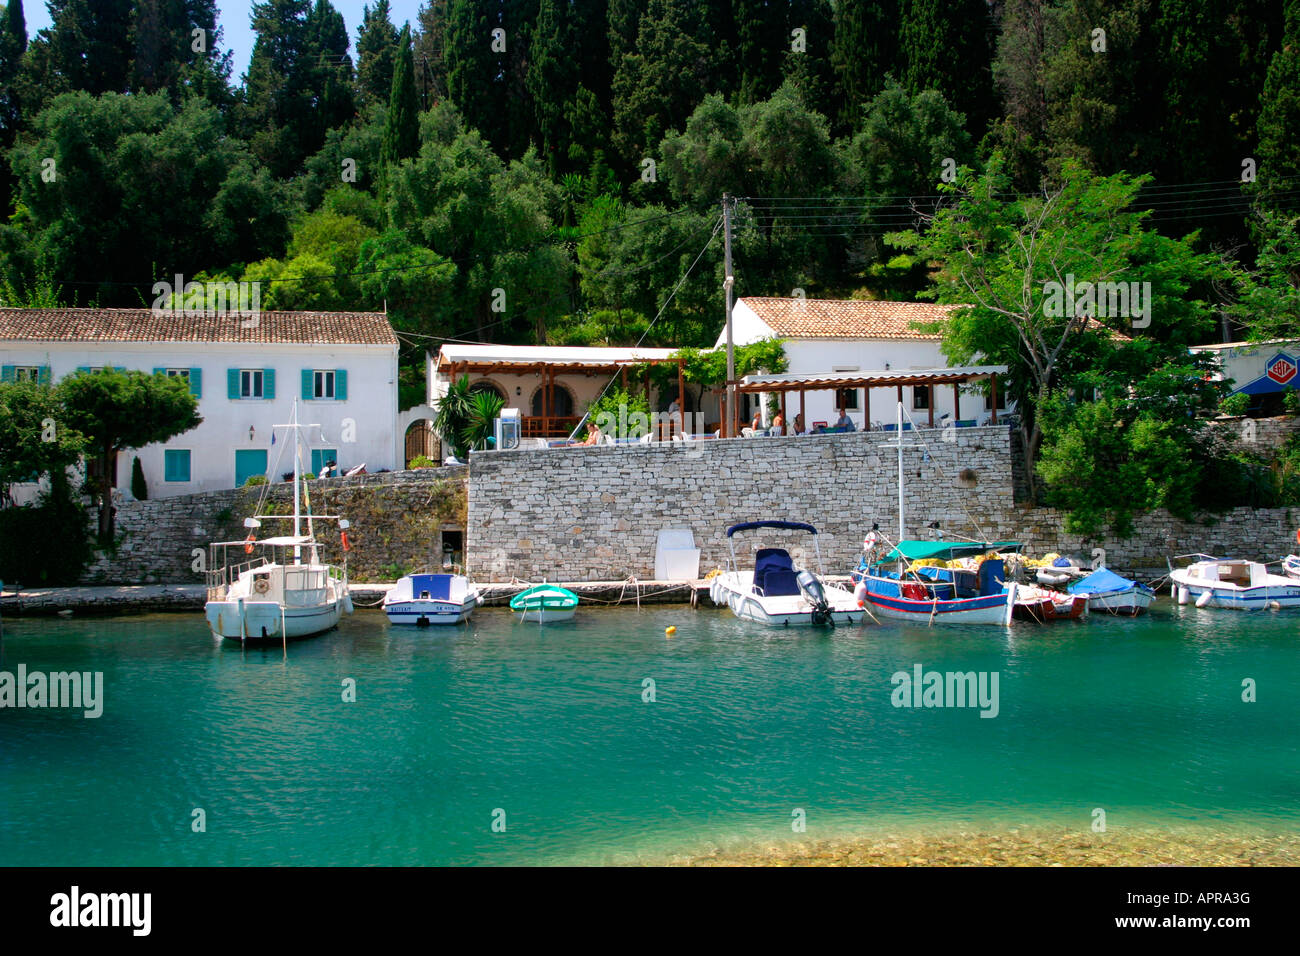 Moored Boats at Taverna Kouloura, Corfu, Greece Stock Photo - Alamy